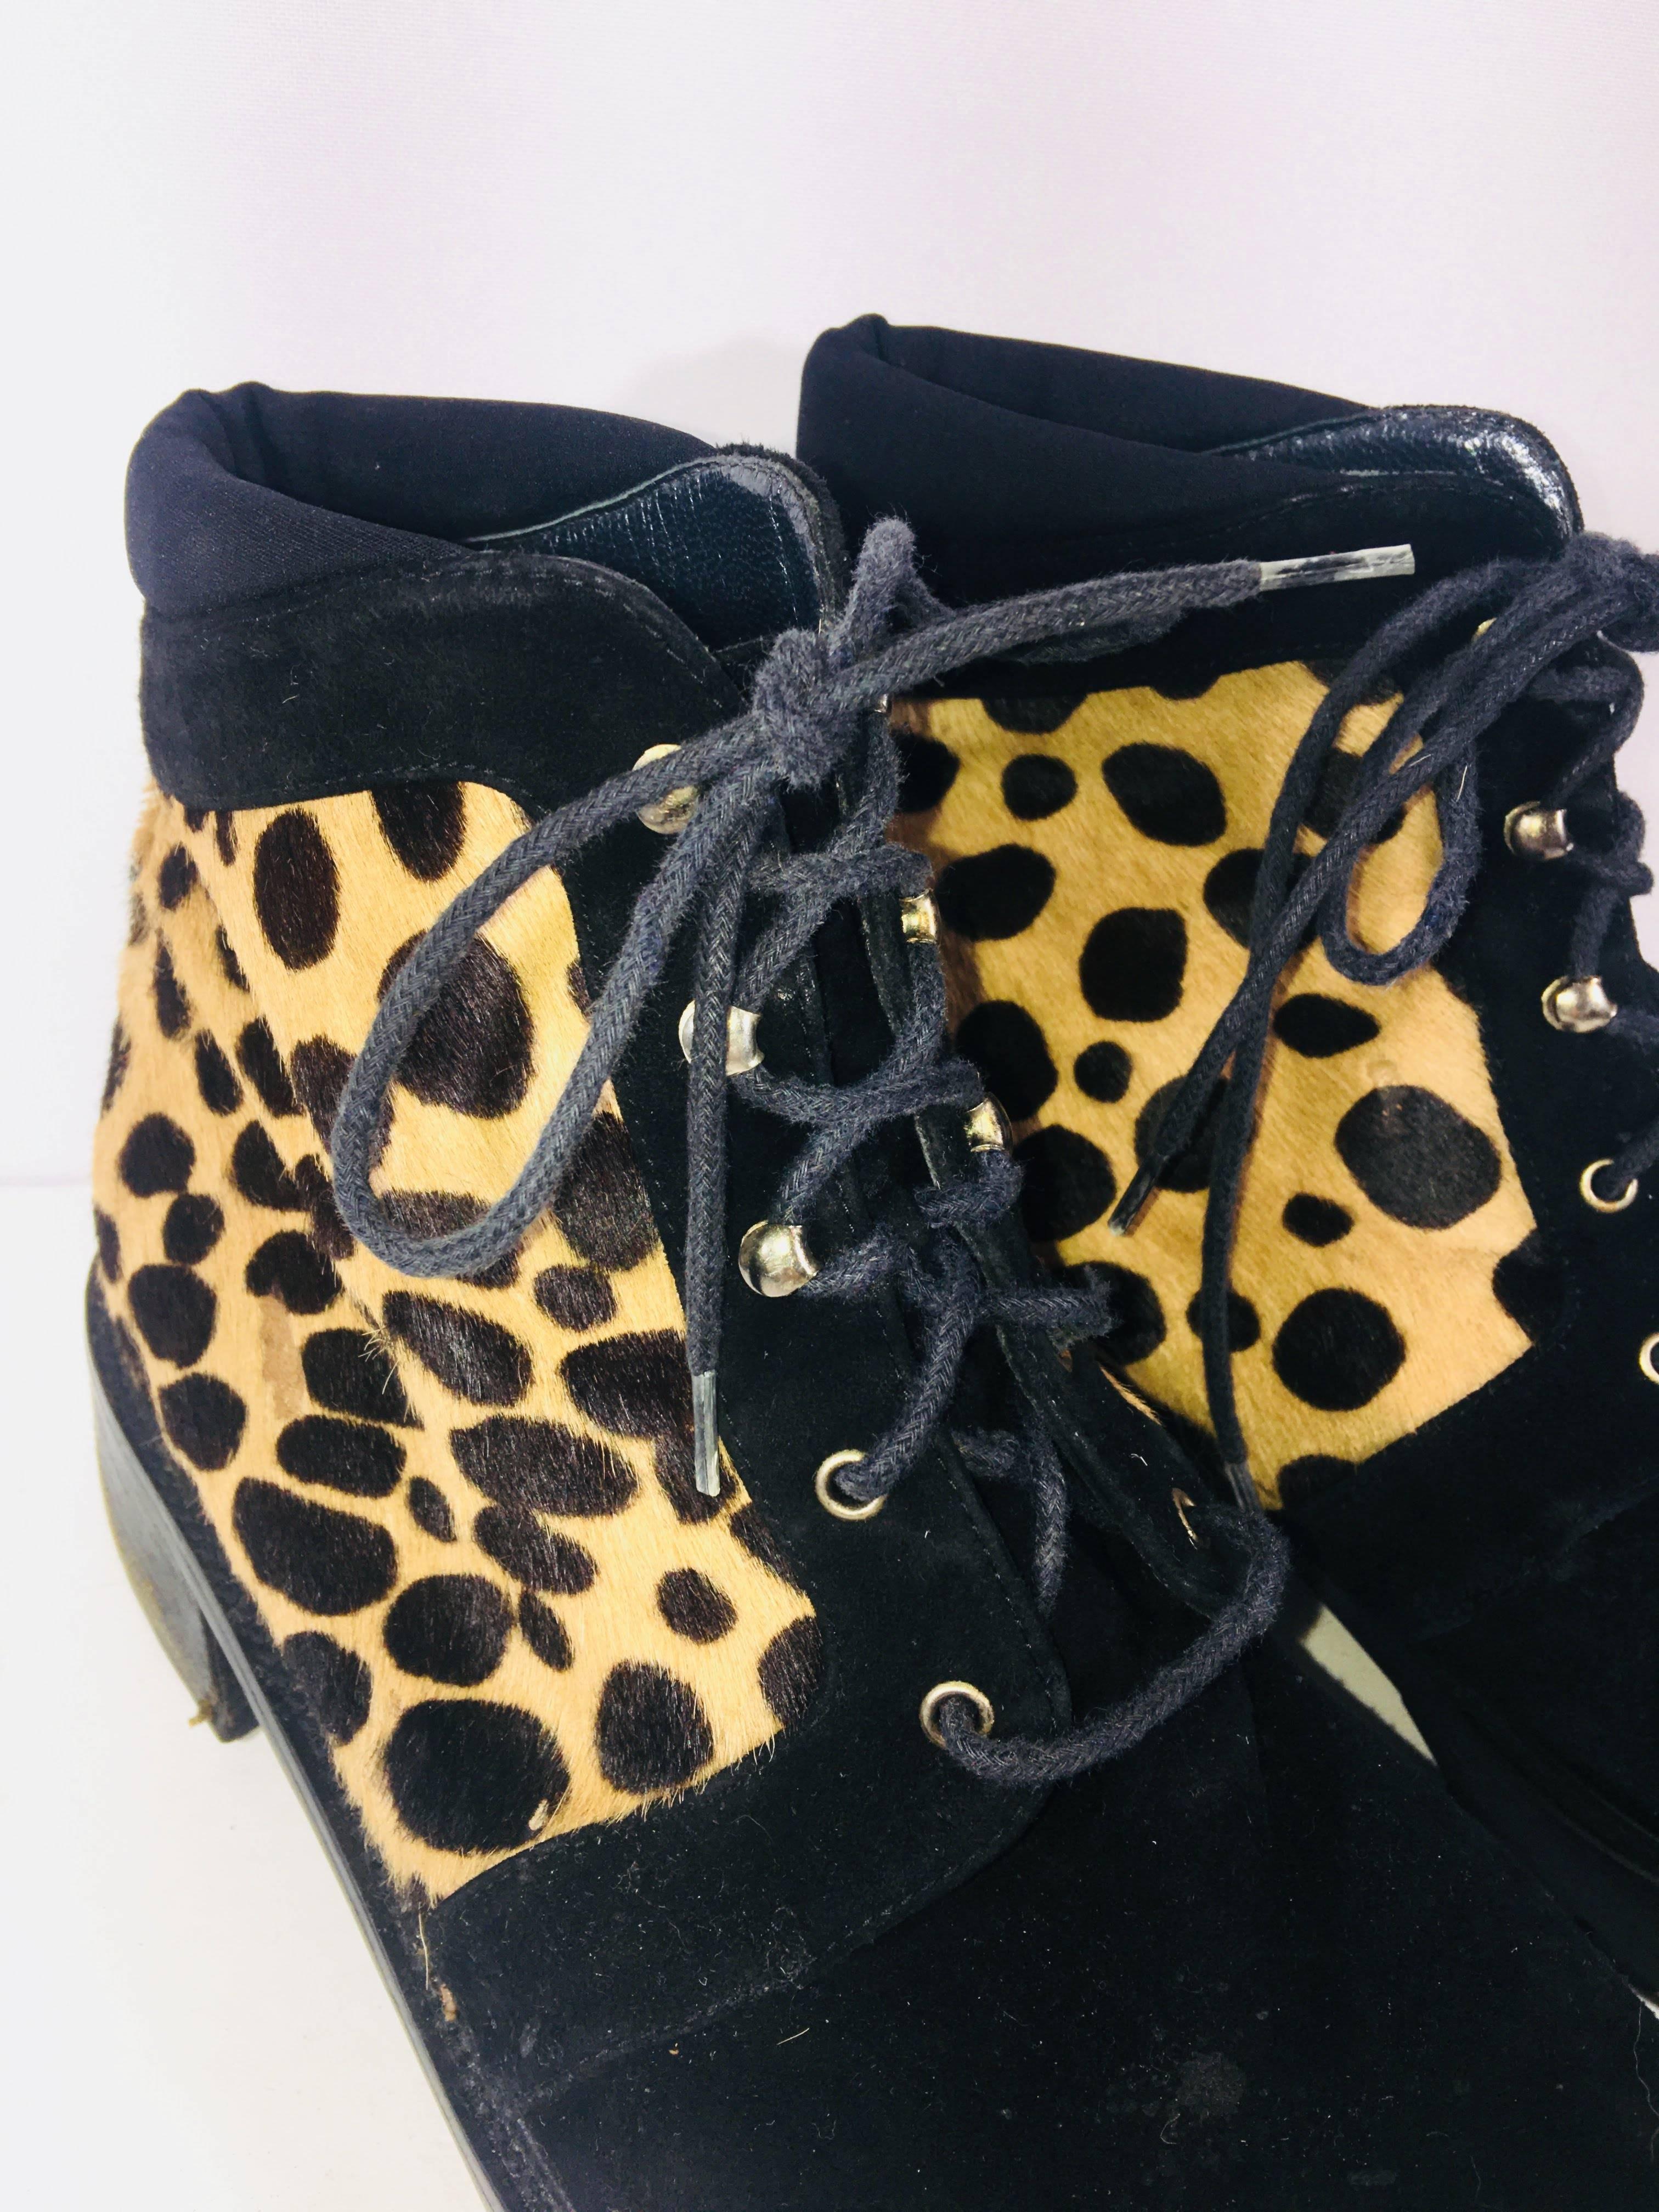 cheetah print ankle booties